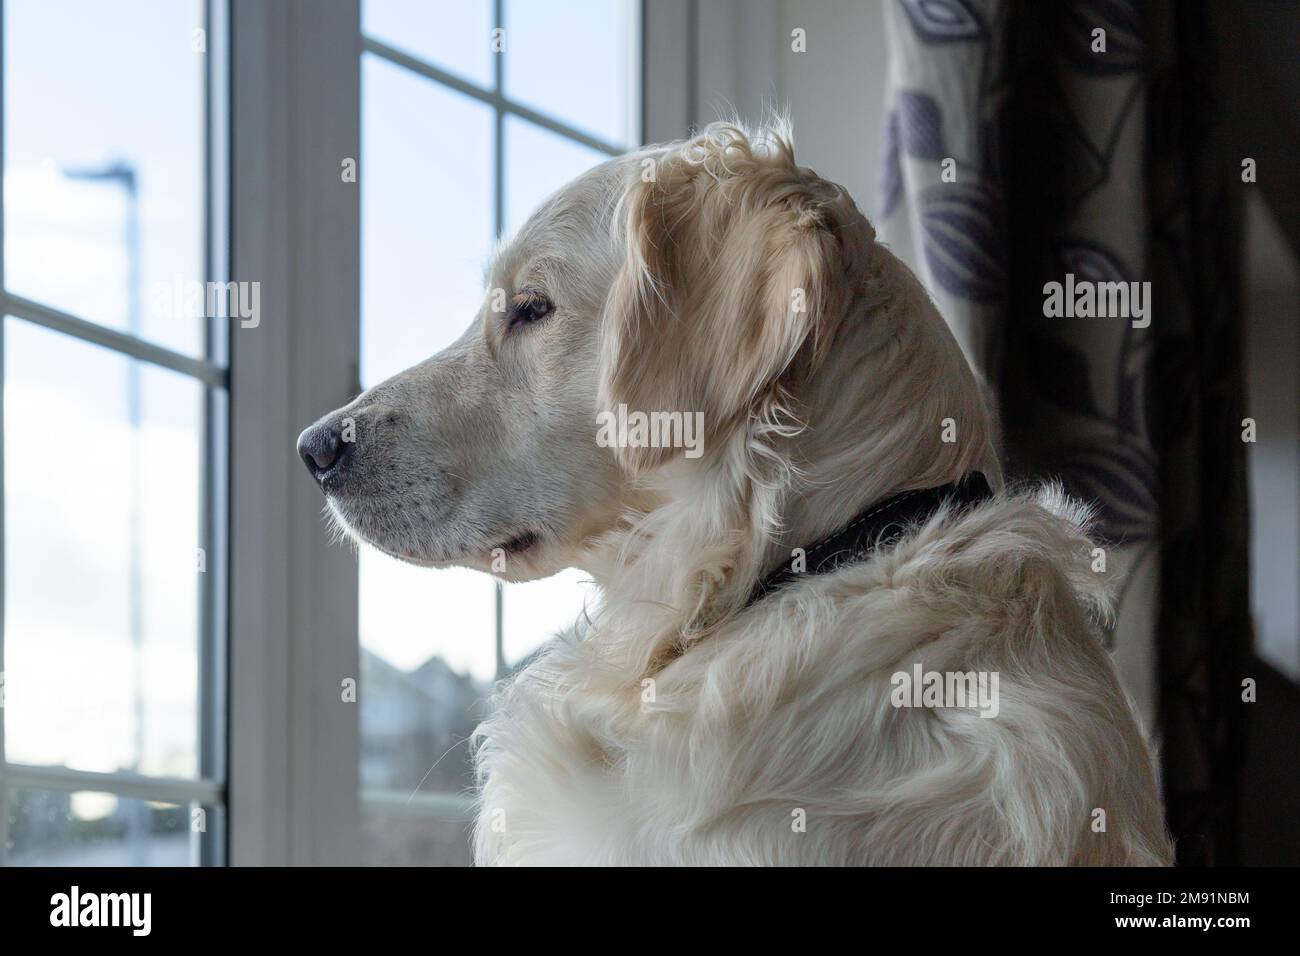 A young golden retriever dog looking through a window. Stock Photo